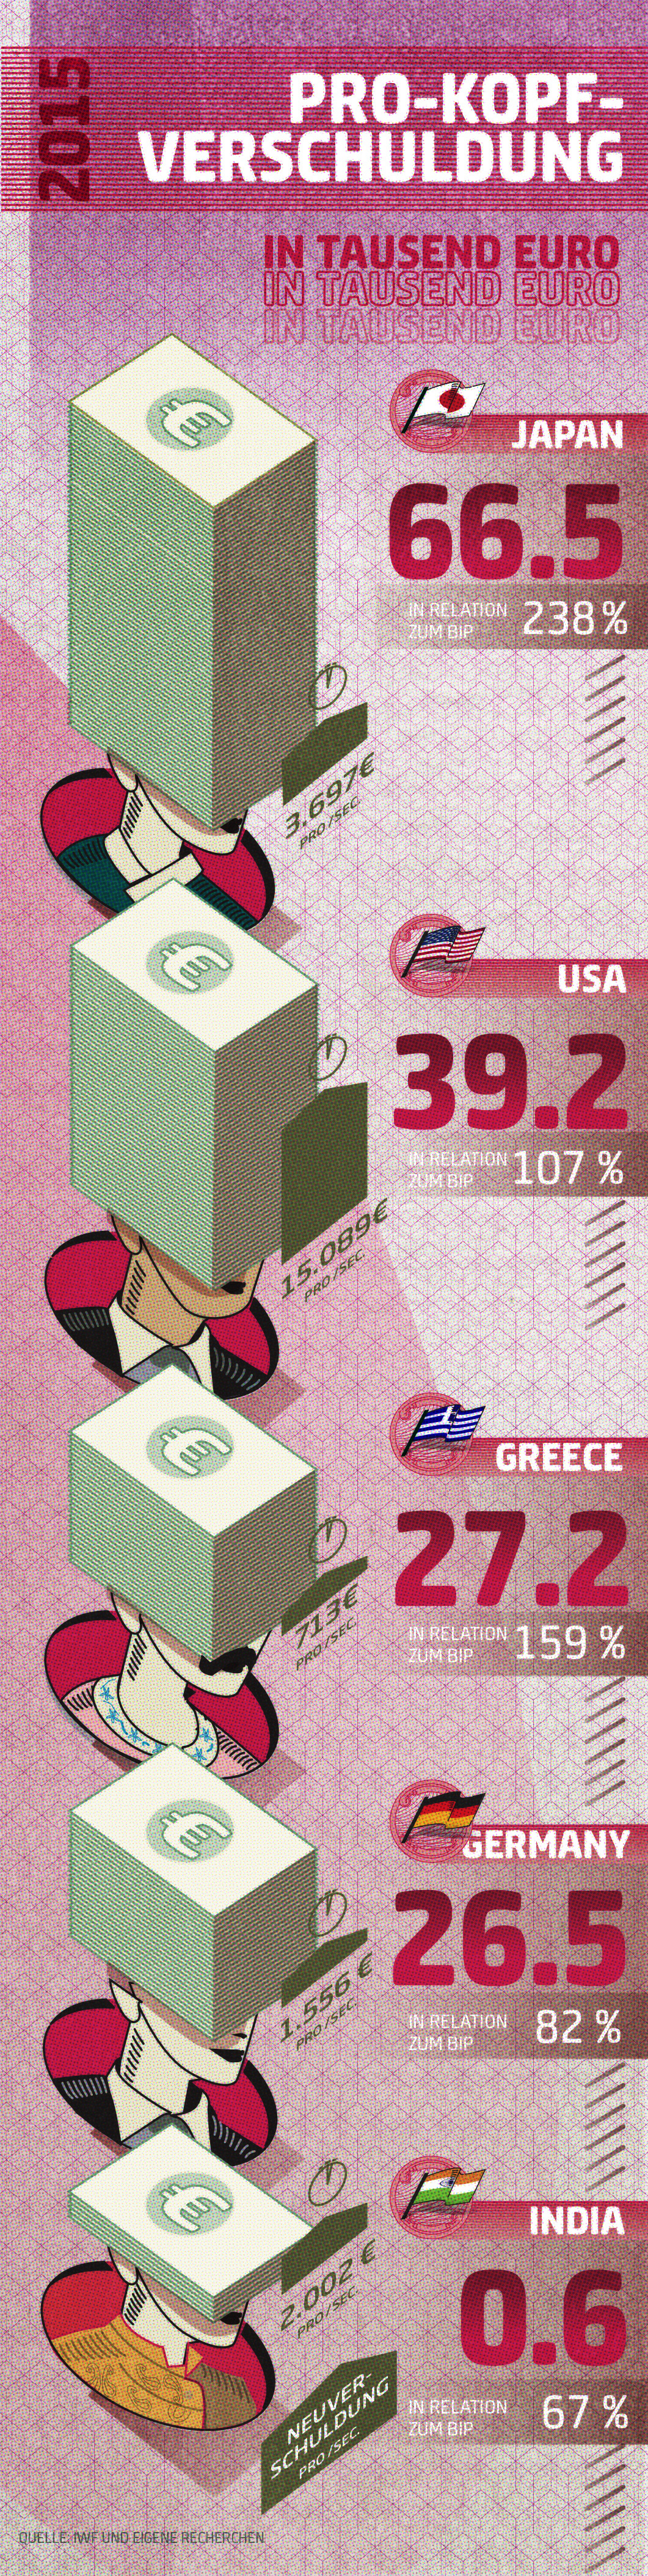 national dept germany Greece India infographic usa verschuldung japan Pro Kopfverschuldung